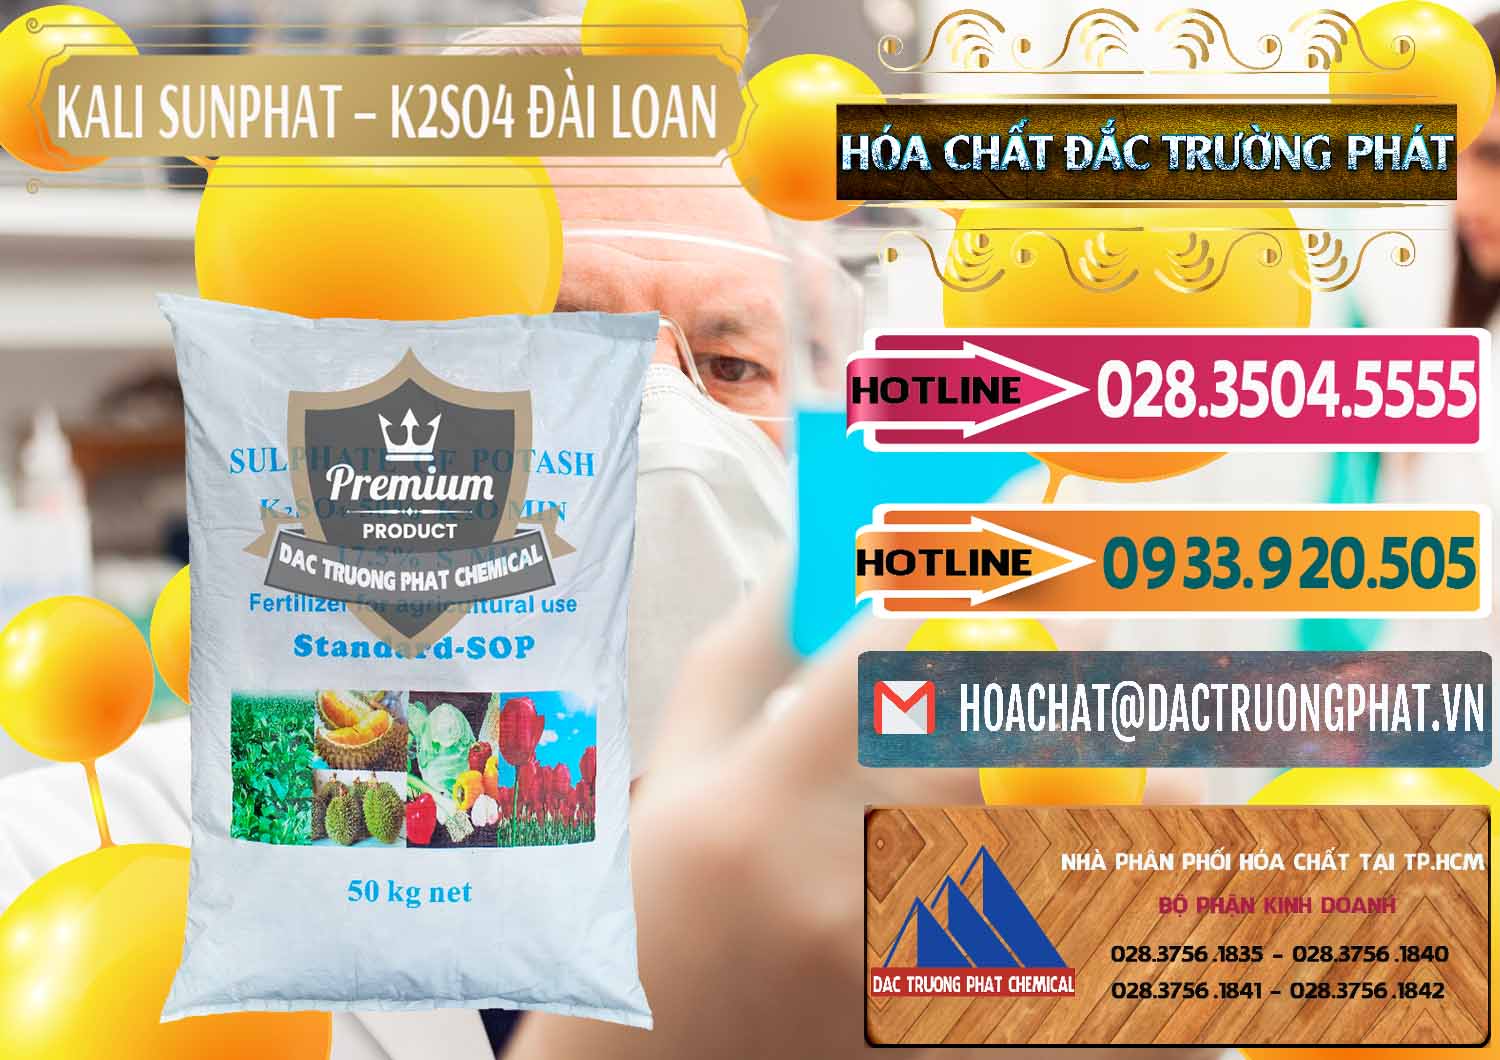 Chuyên kinh doanh và bán Kali Sunphat – K2SO4 Đài Loan Taiwan - 0084 - Công ty chuyên bán và cung cấp hóa chất tại TP.HCM - dactruongphat.vn